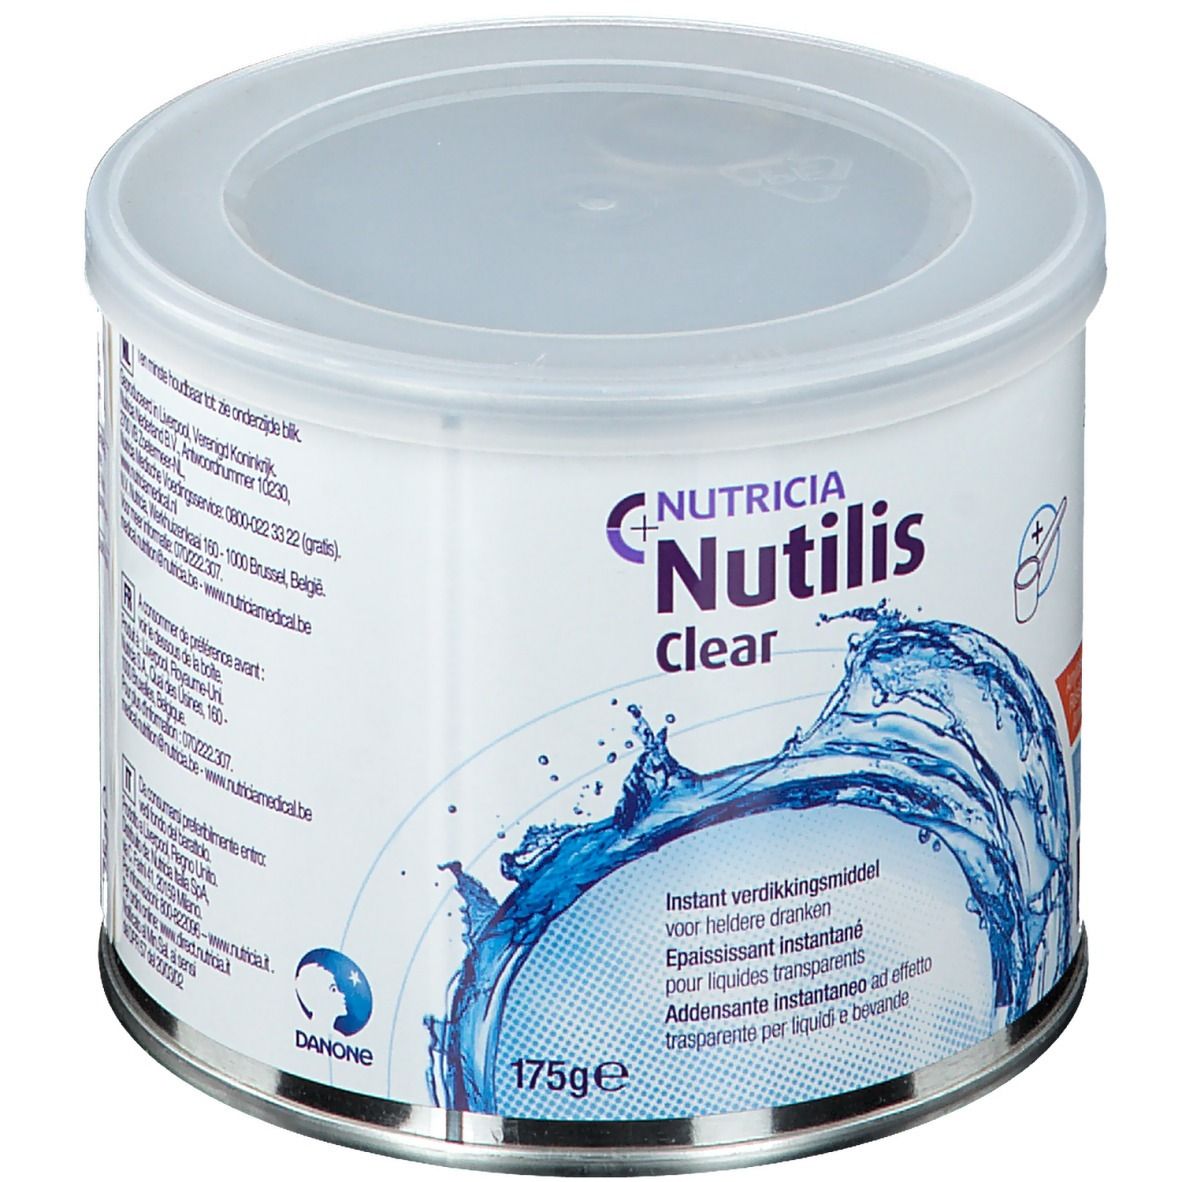 Nutilis Clear